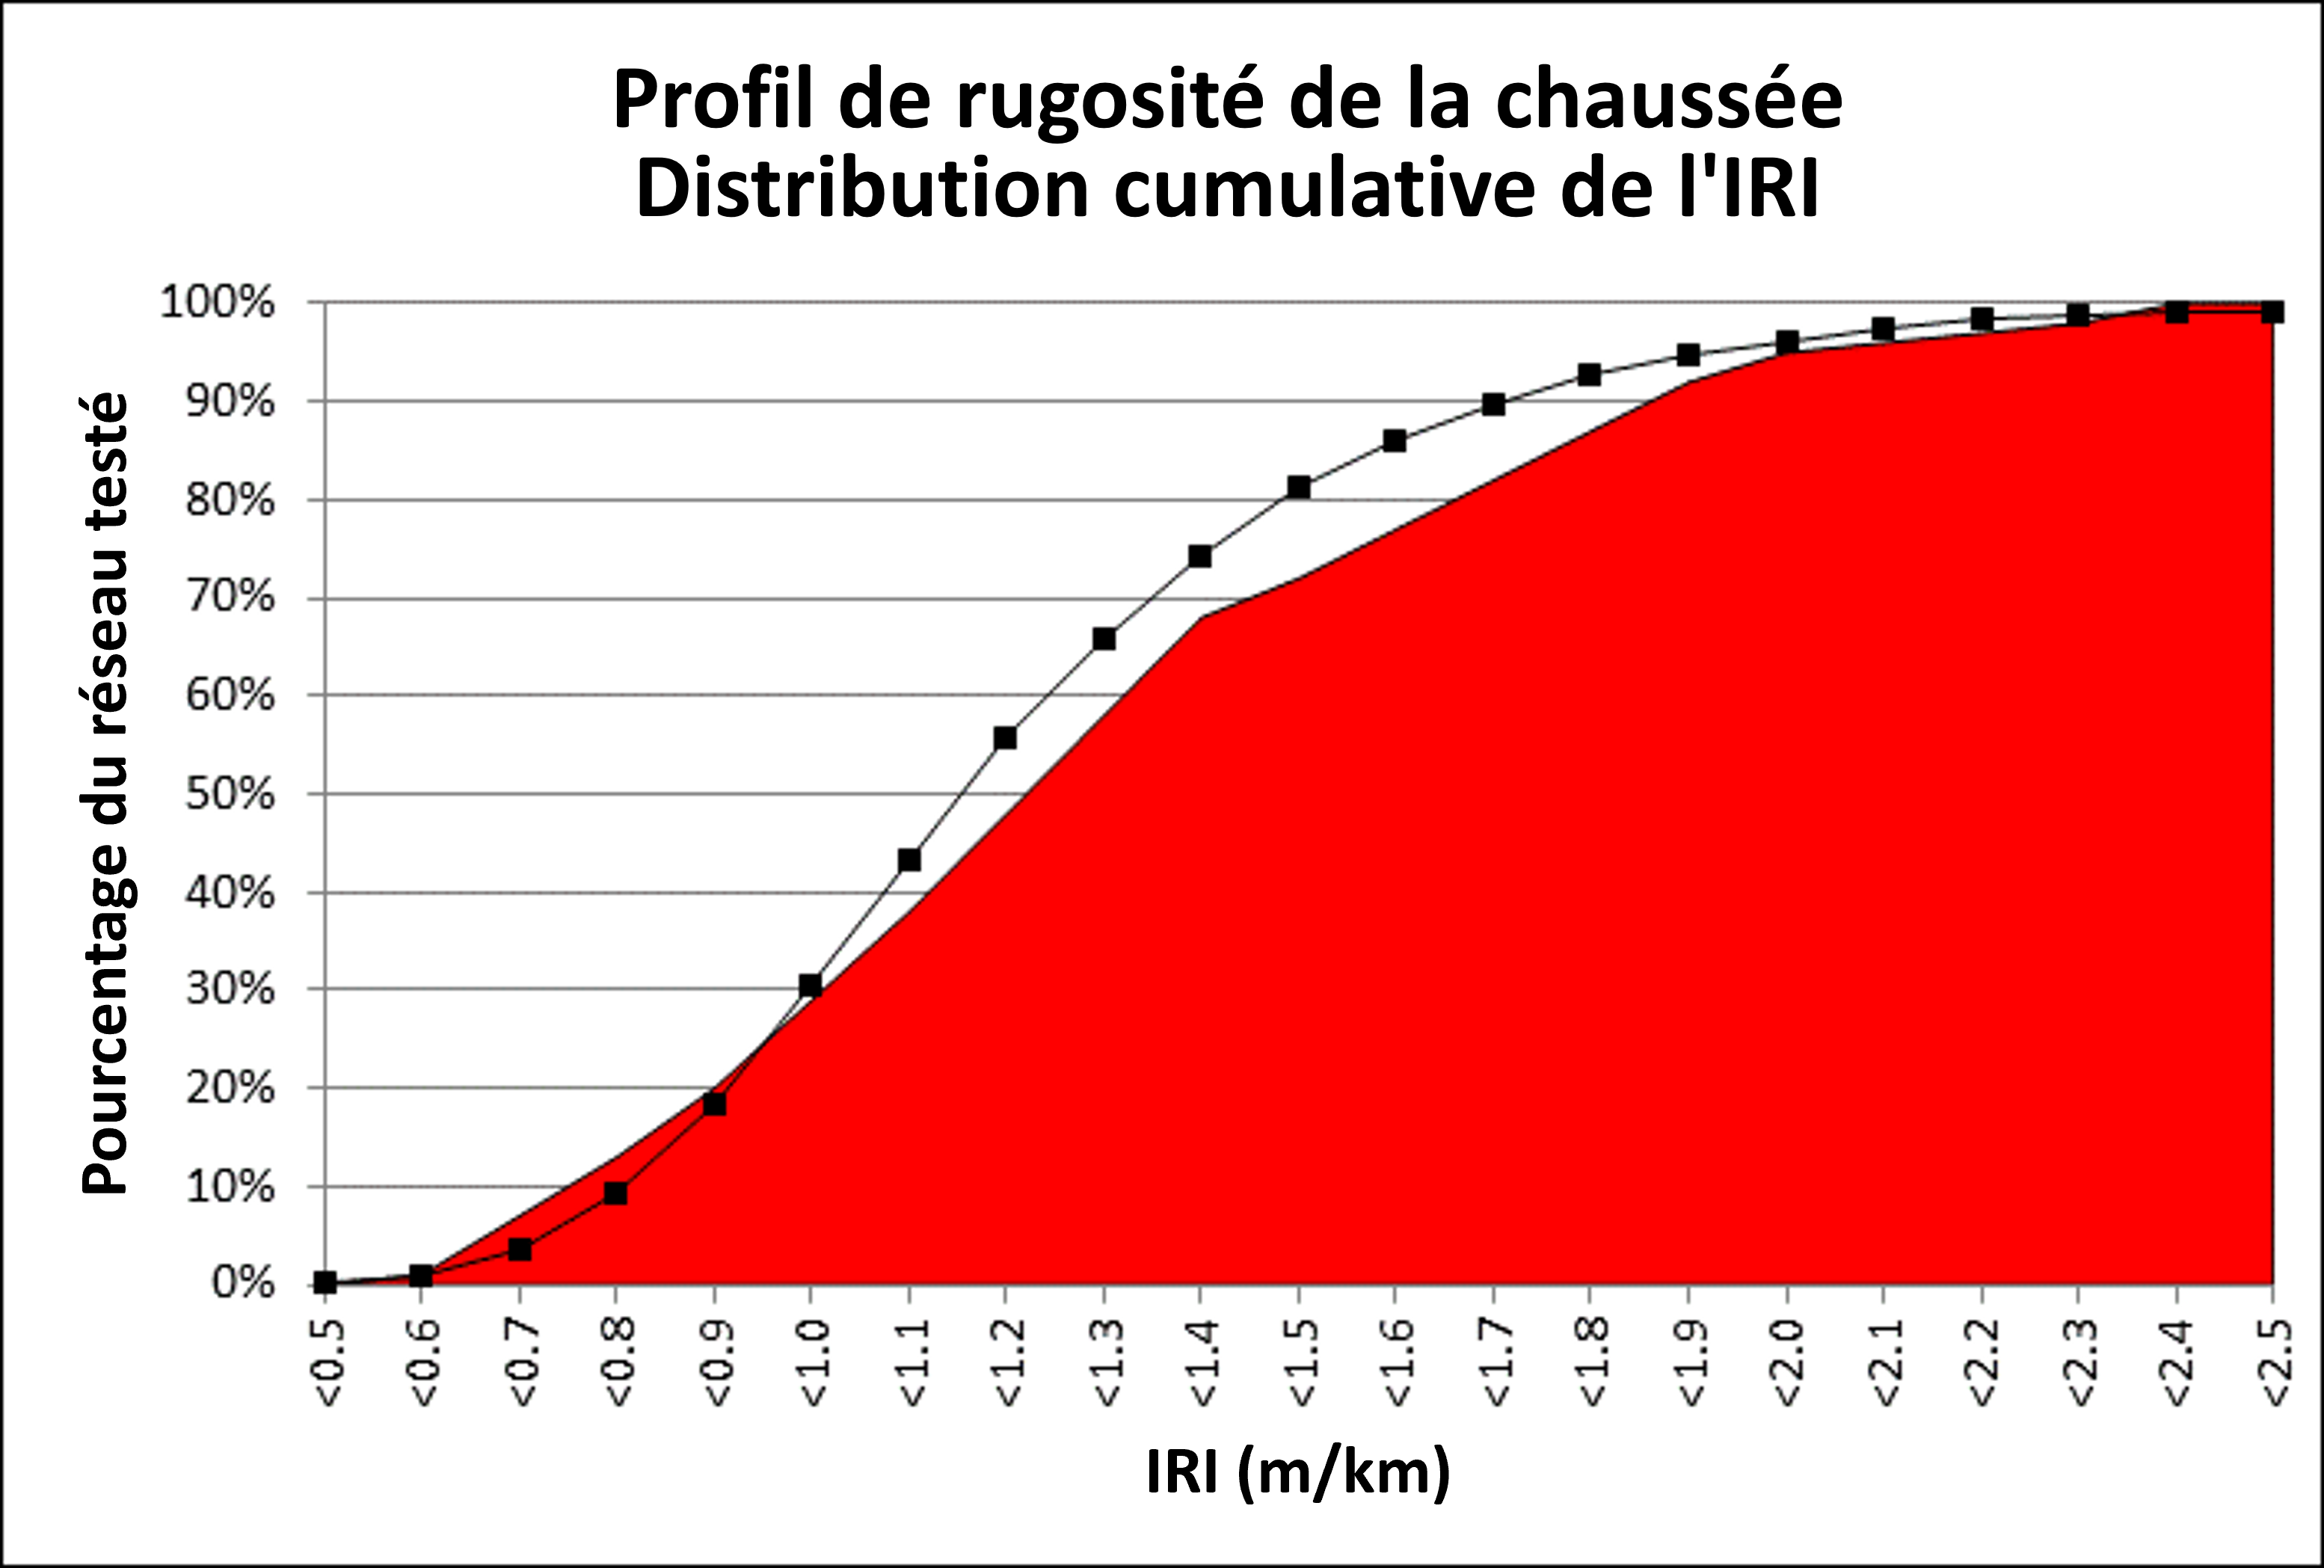 Figure 2.2.10.1 Distribution cumulative du profil IRI